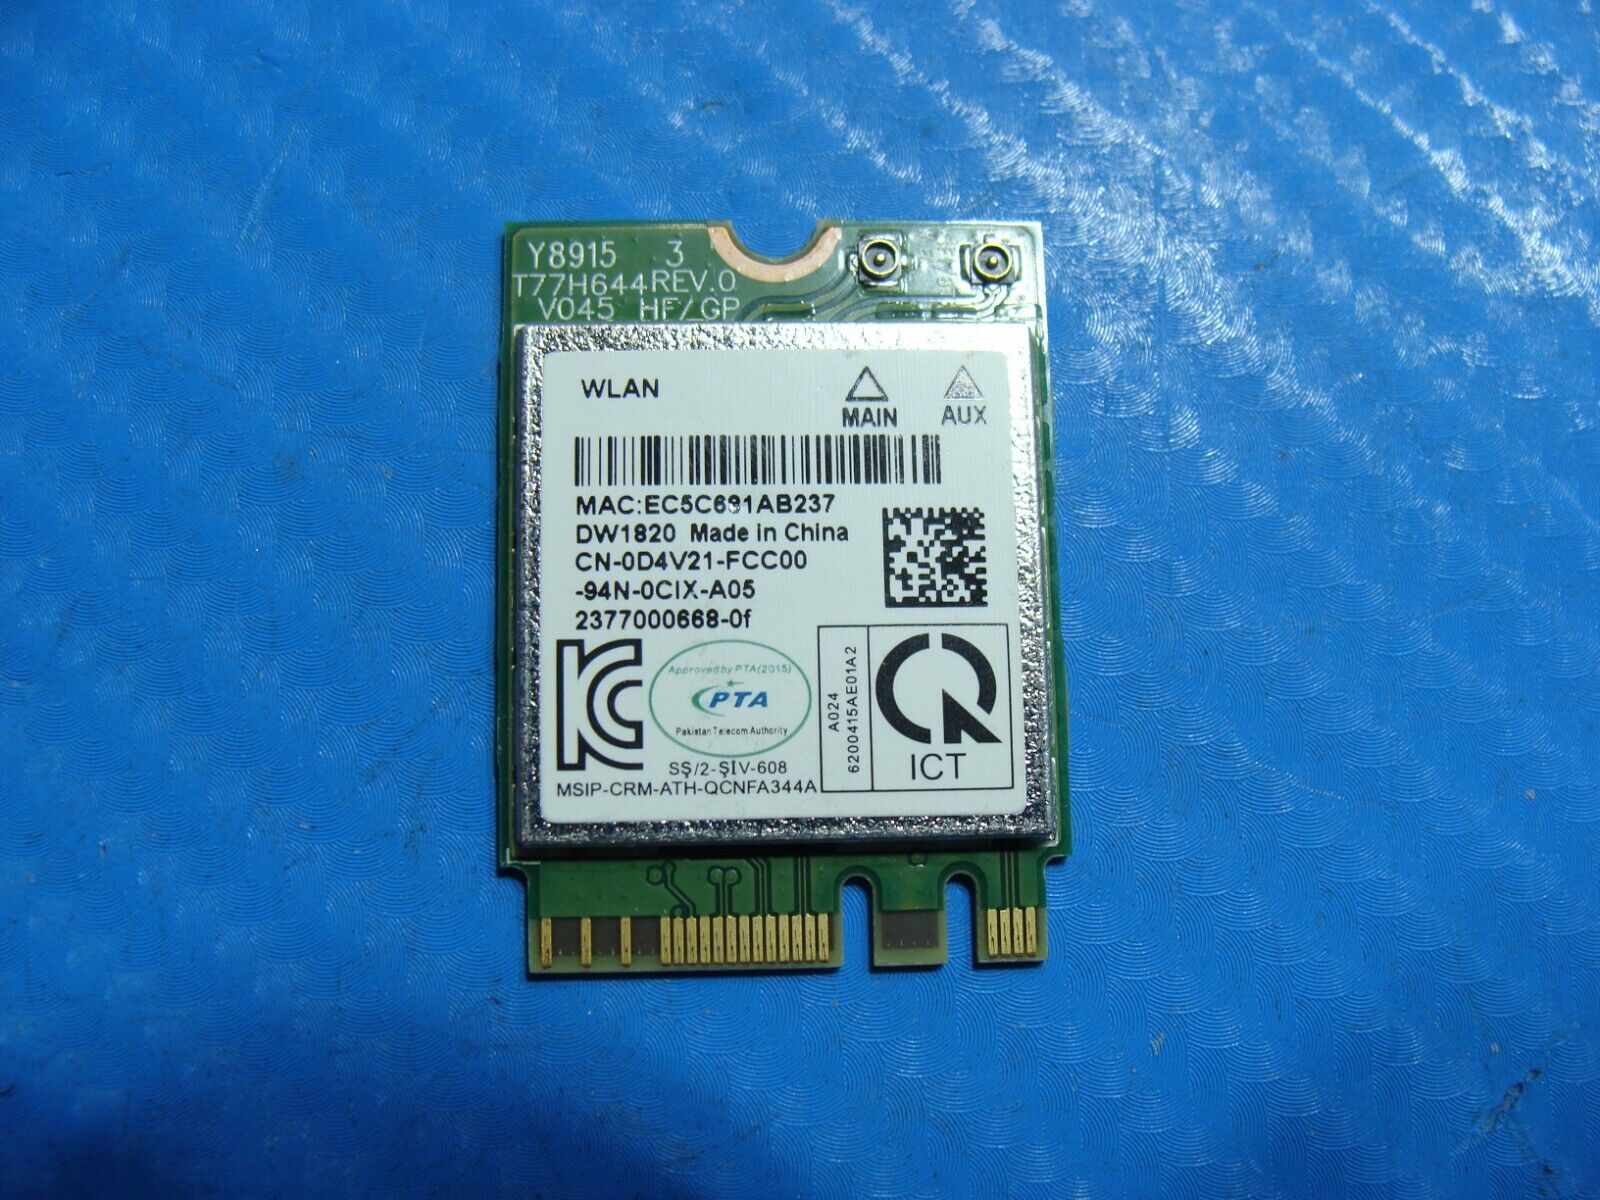 Dell Latitude 7390 13.3" Genuine WiFi Wireless Card QCNFA344A D4V21